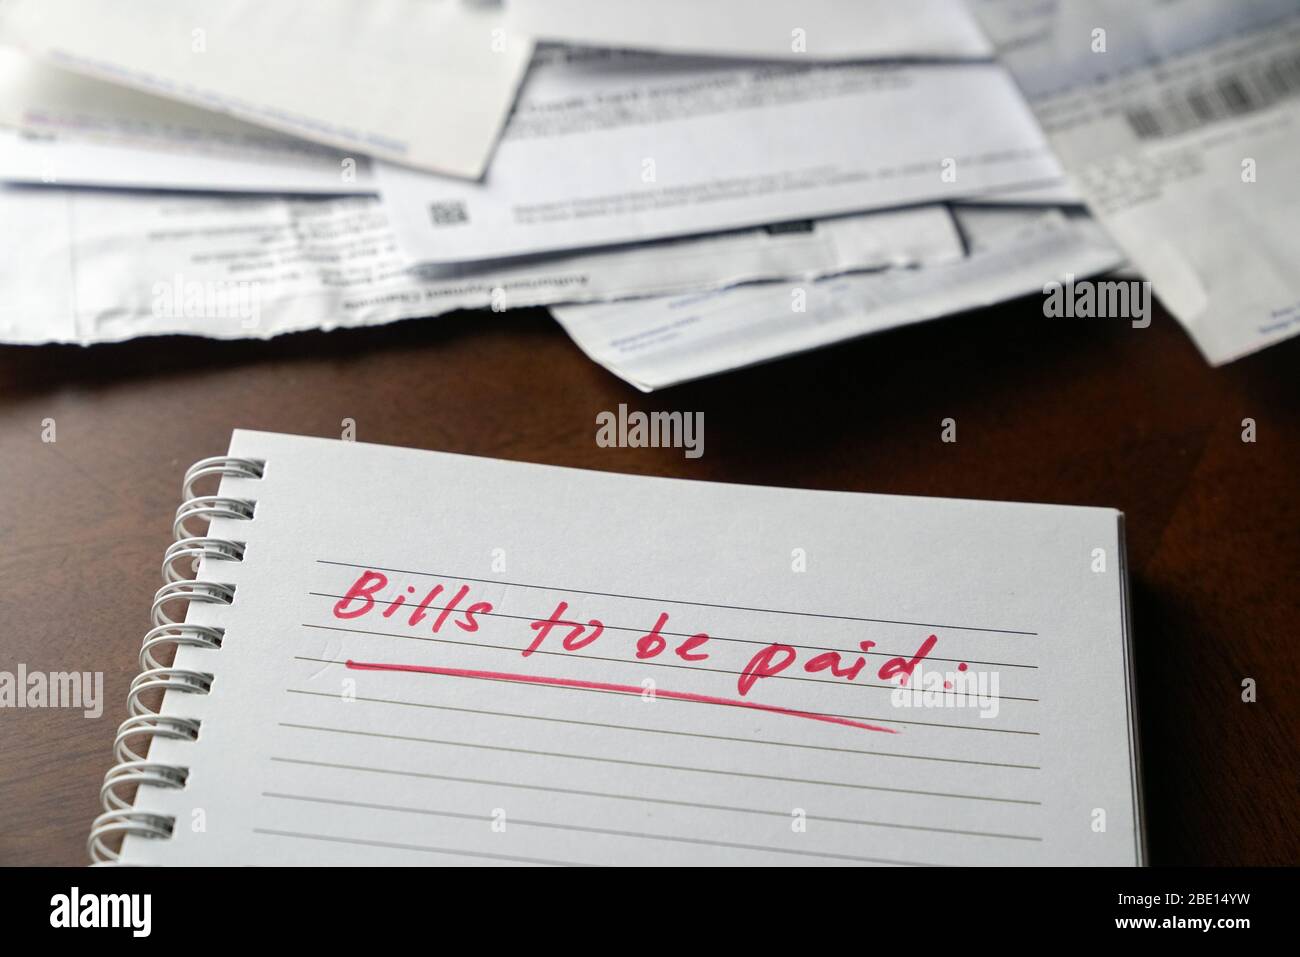 Fatture da pagare, scritte in rosso sul notebook con fatture e fatture in background. Concetto di disoccupazione o recessione. Foto Stock